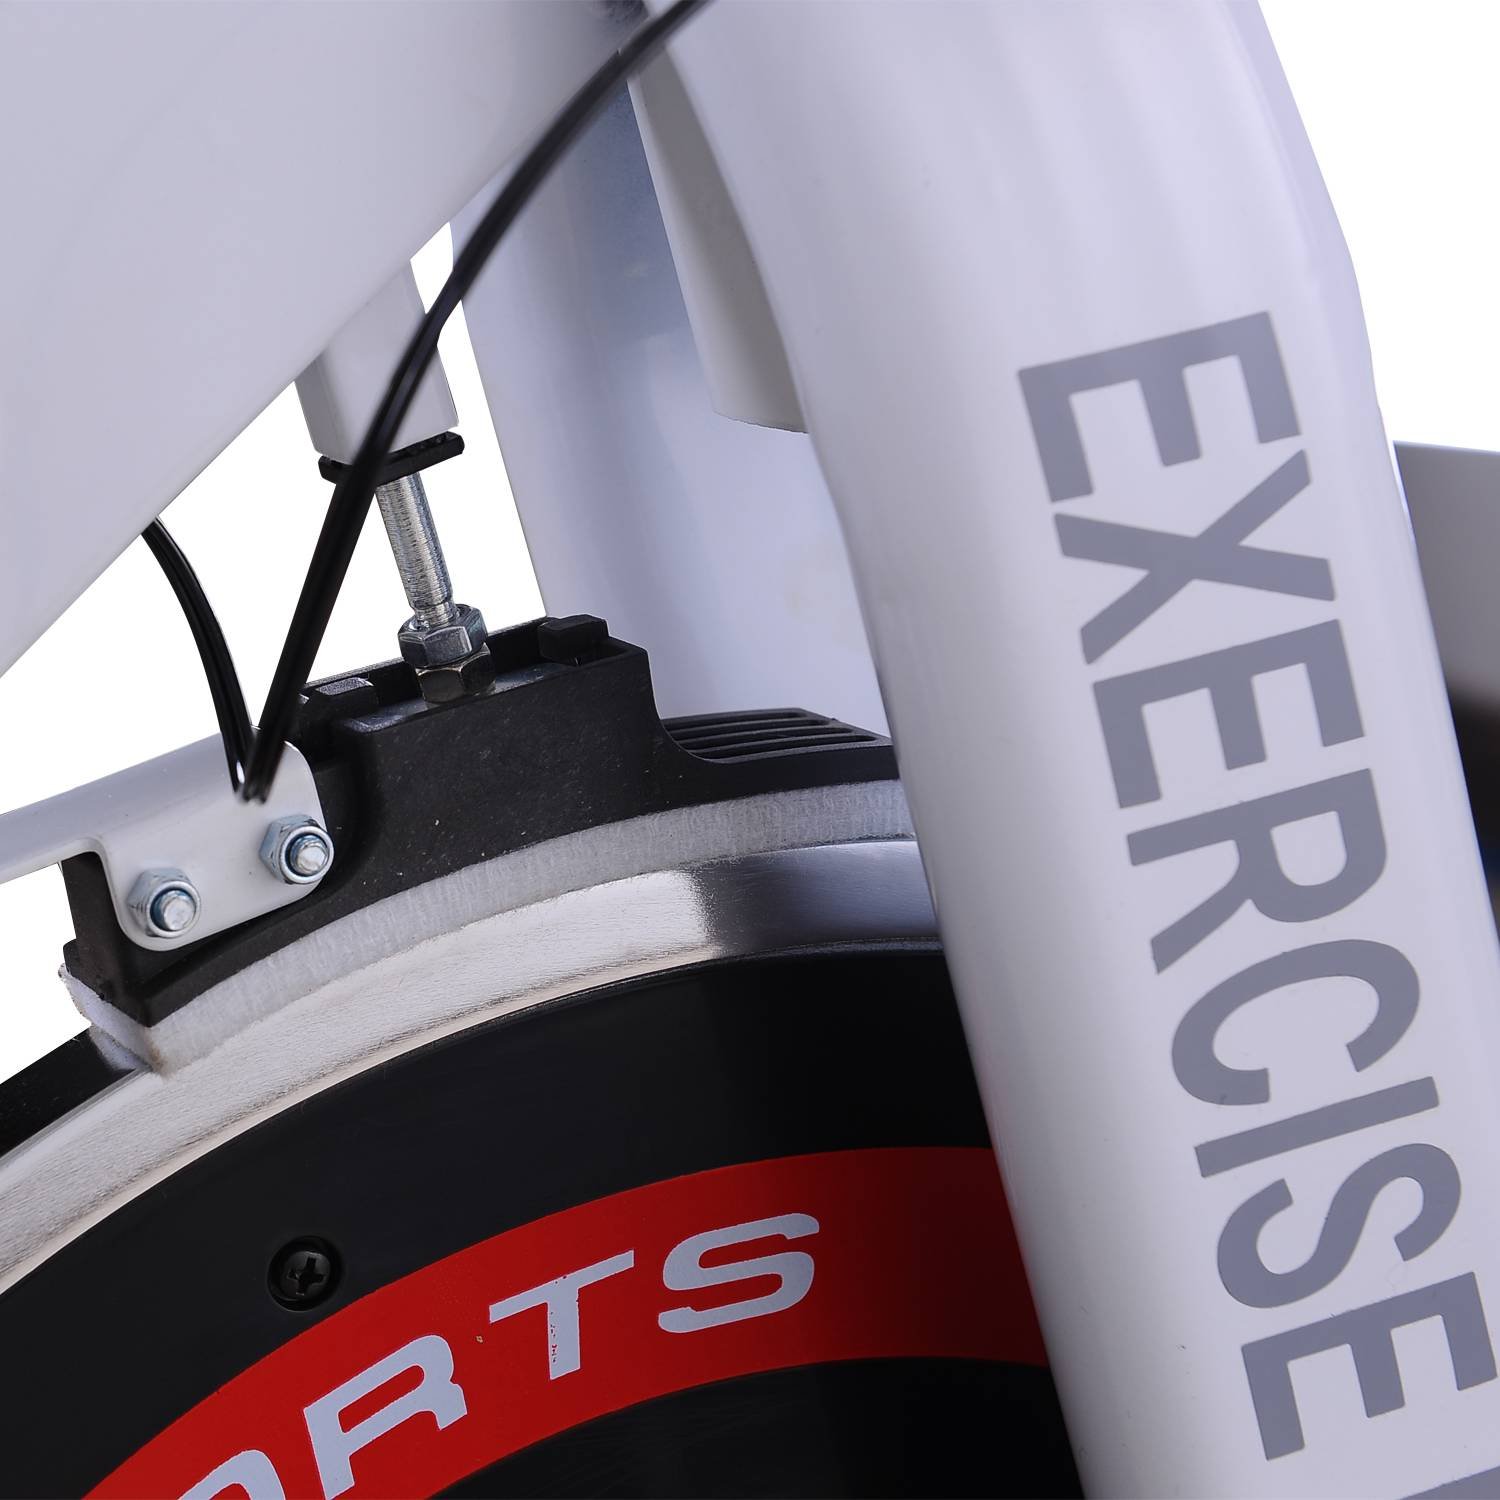 Bicicleta Estática de Spinning Bicicleta de Fitness Ecrã LCD Assento e  Guiador Ajustável Resistência Regulável Carga 120kg 107x48x100cm Aço Branco  | O